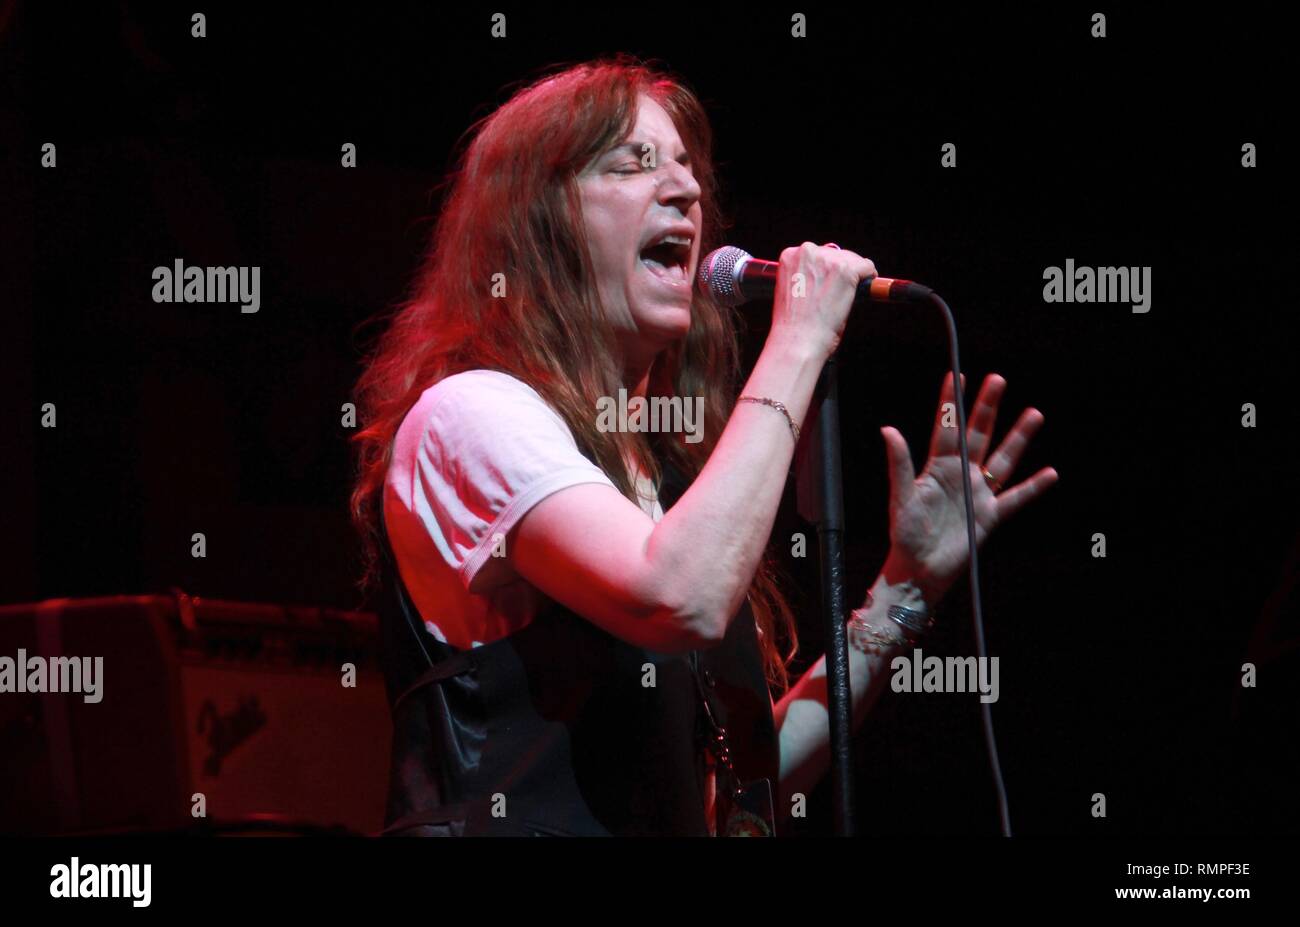 Cantante e cantautore poeta e artista Patti Smith è mostrato esibirsi sul palco durante un 'live' aspetto di concerto. Foto Stock